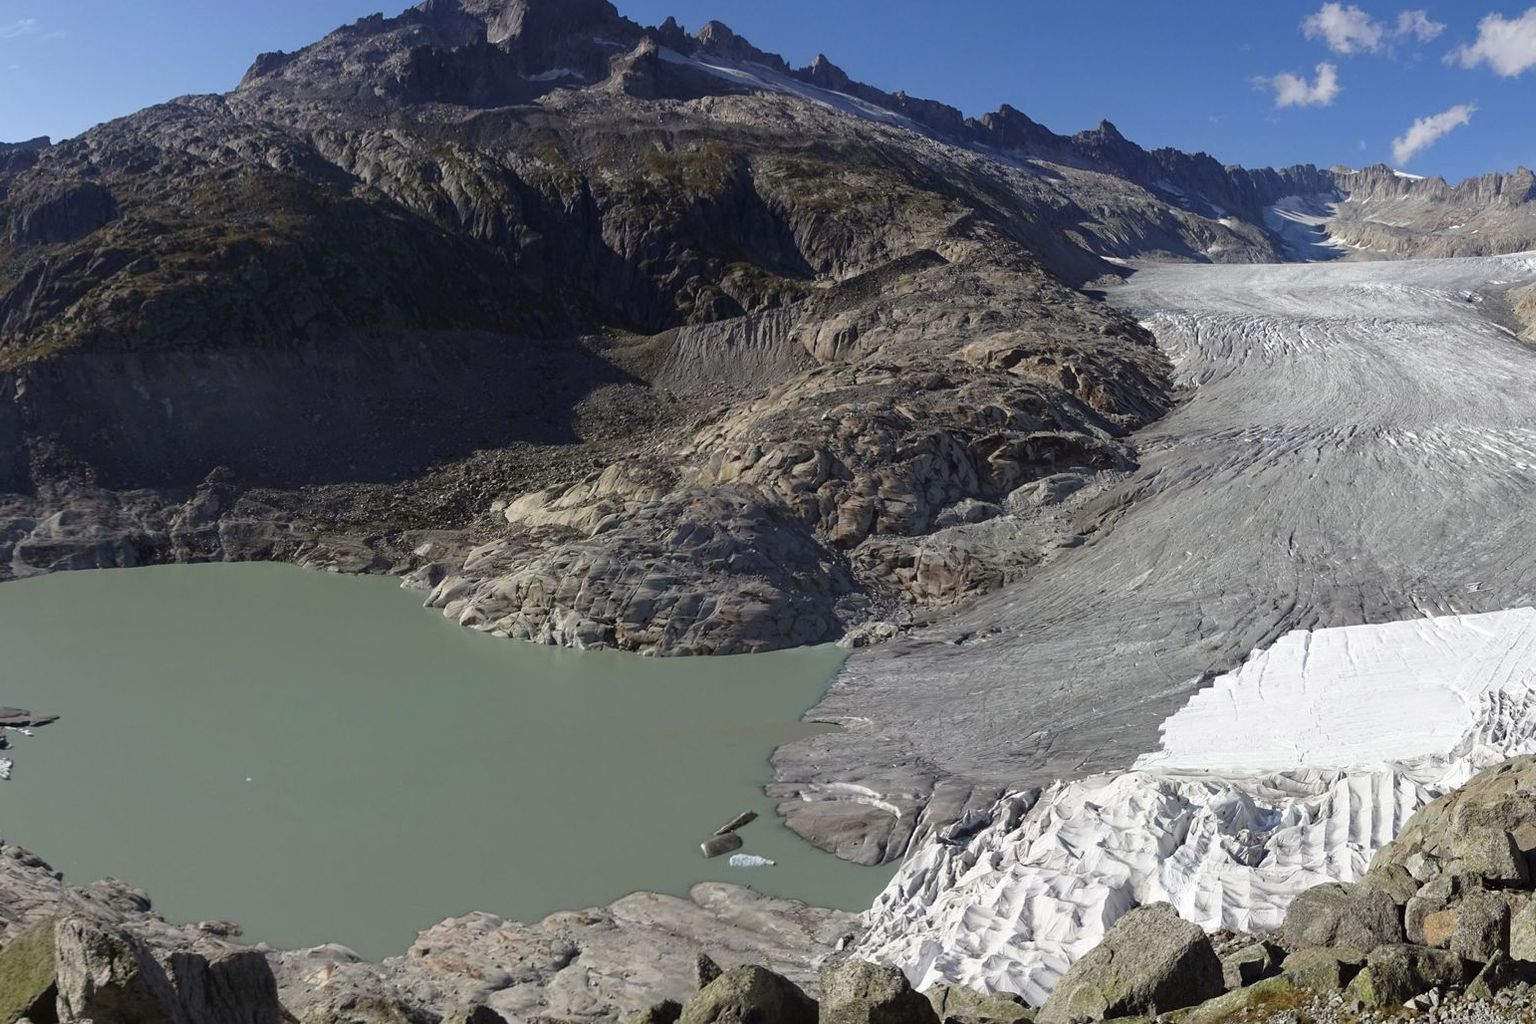 Le lac se trouvant à la langue du glacier du Rhône (VS) s'est de nouveau fortement développé en 2018. On tente de préserver la grotte glaciaire en recouvrant la glace de la toison blanche.